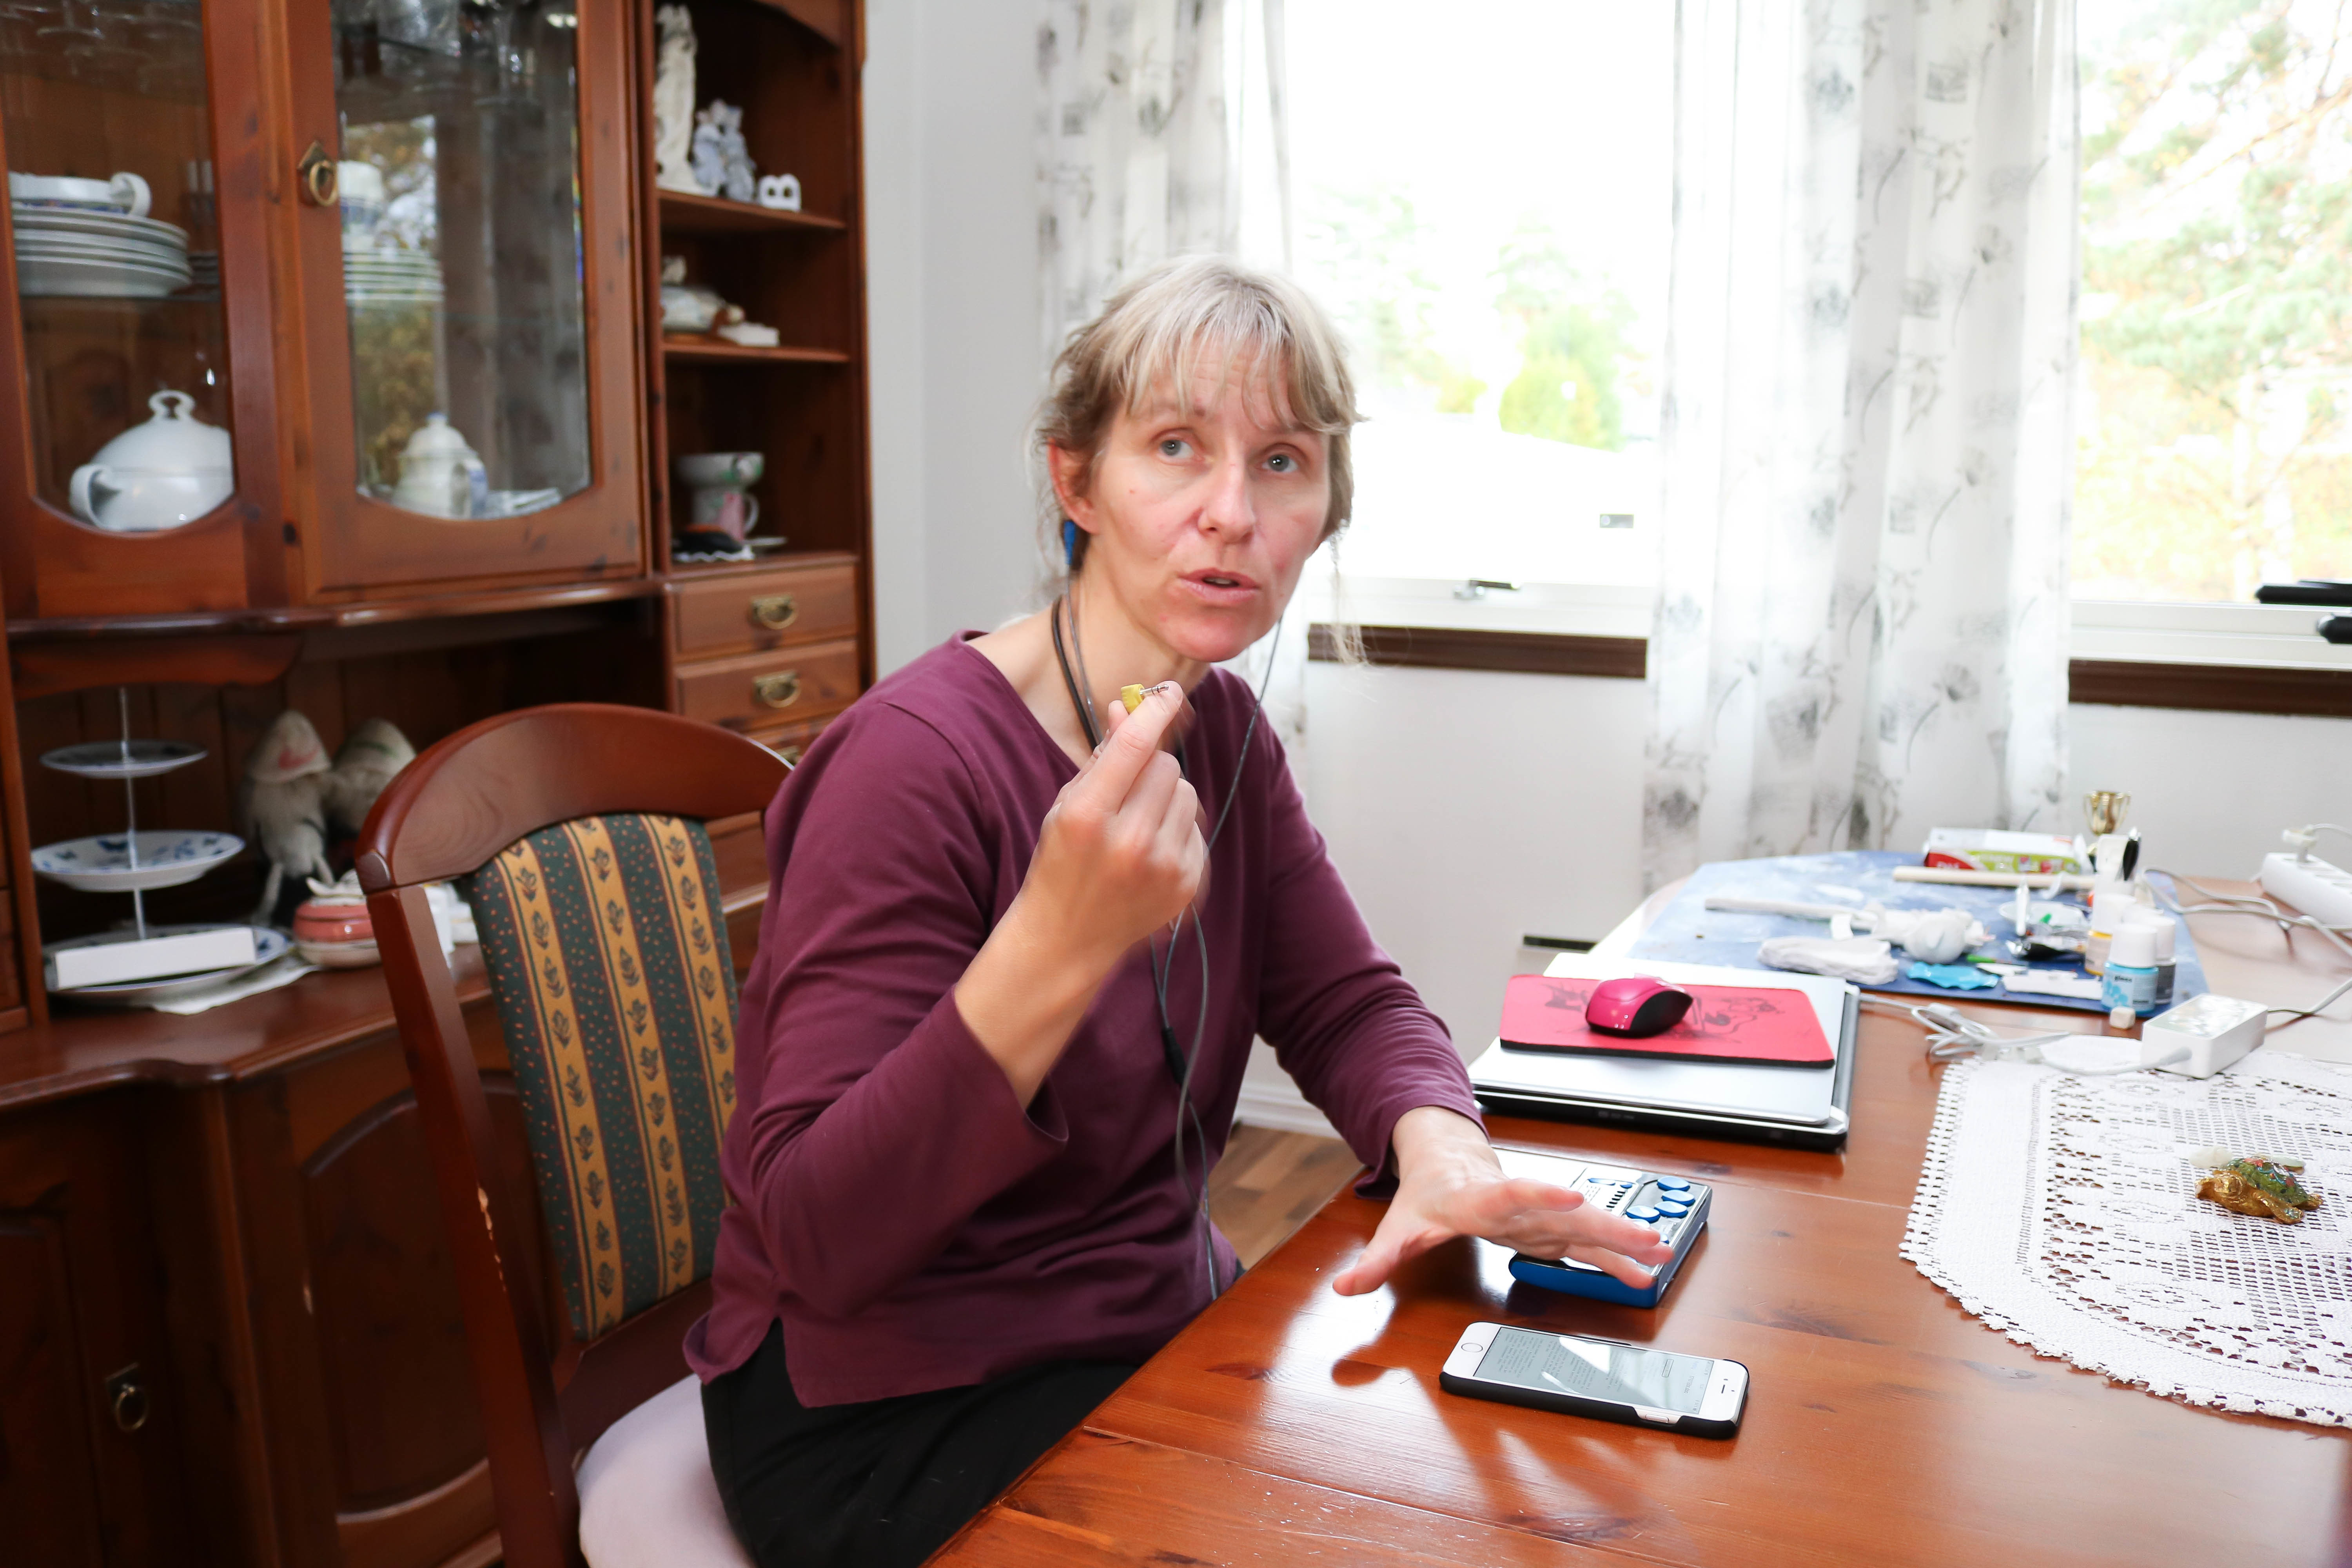 Kvinne med lilla genser i spisestue. Hun bruker sin mobil ved hjelp av headset og leselist, og holder høyrehånd mot kamera.